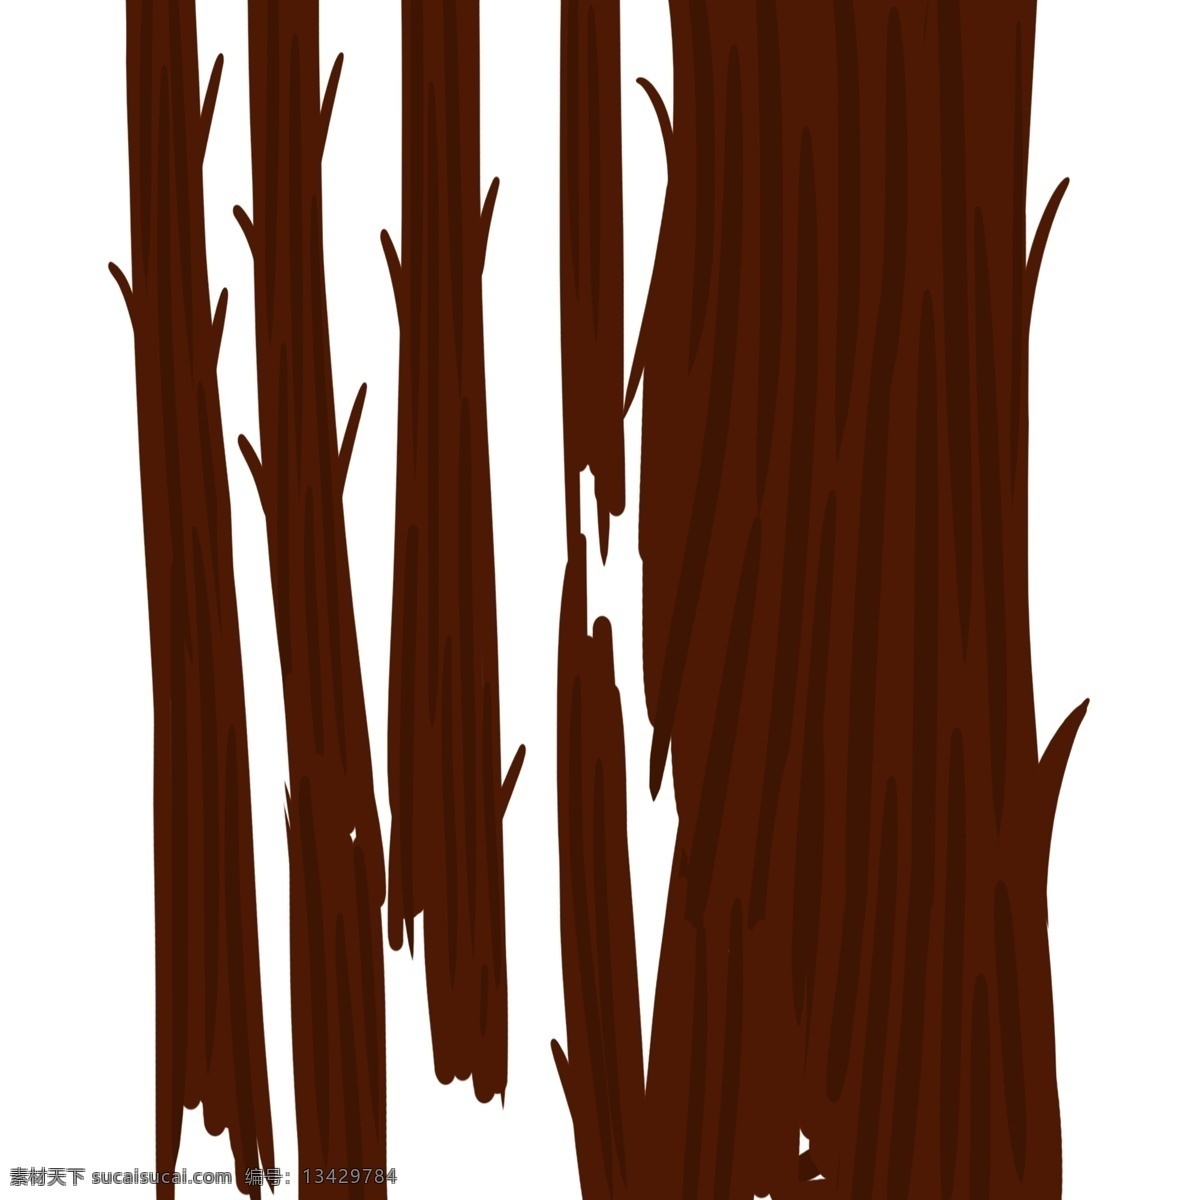 片 的卡 通 木纹 底纹 木头 卡通木头 木头底纹 木头背景